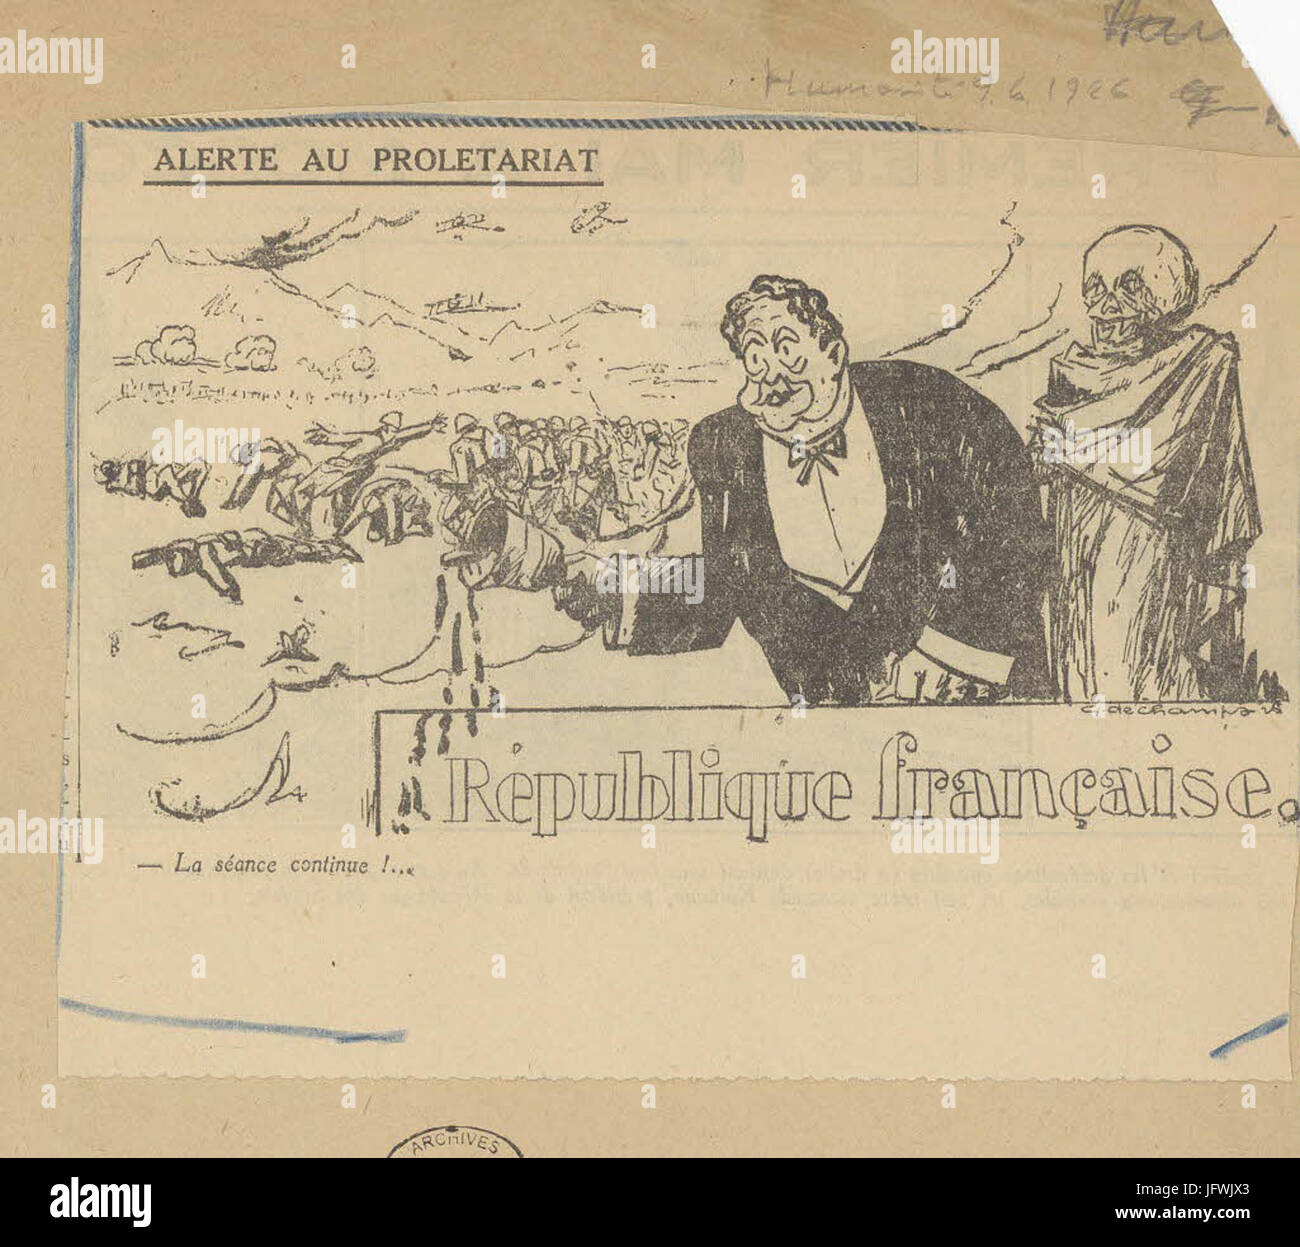 Karikatur von Paul Painlevé, Président du Conseil, Par Laquelle il est Accusé de Fabriquer de faux Papiers Diplomatique - Archives Nationales - 313AP-20 - (2) Stockfoto